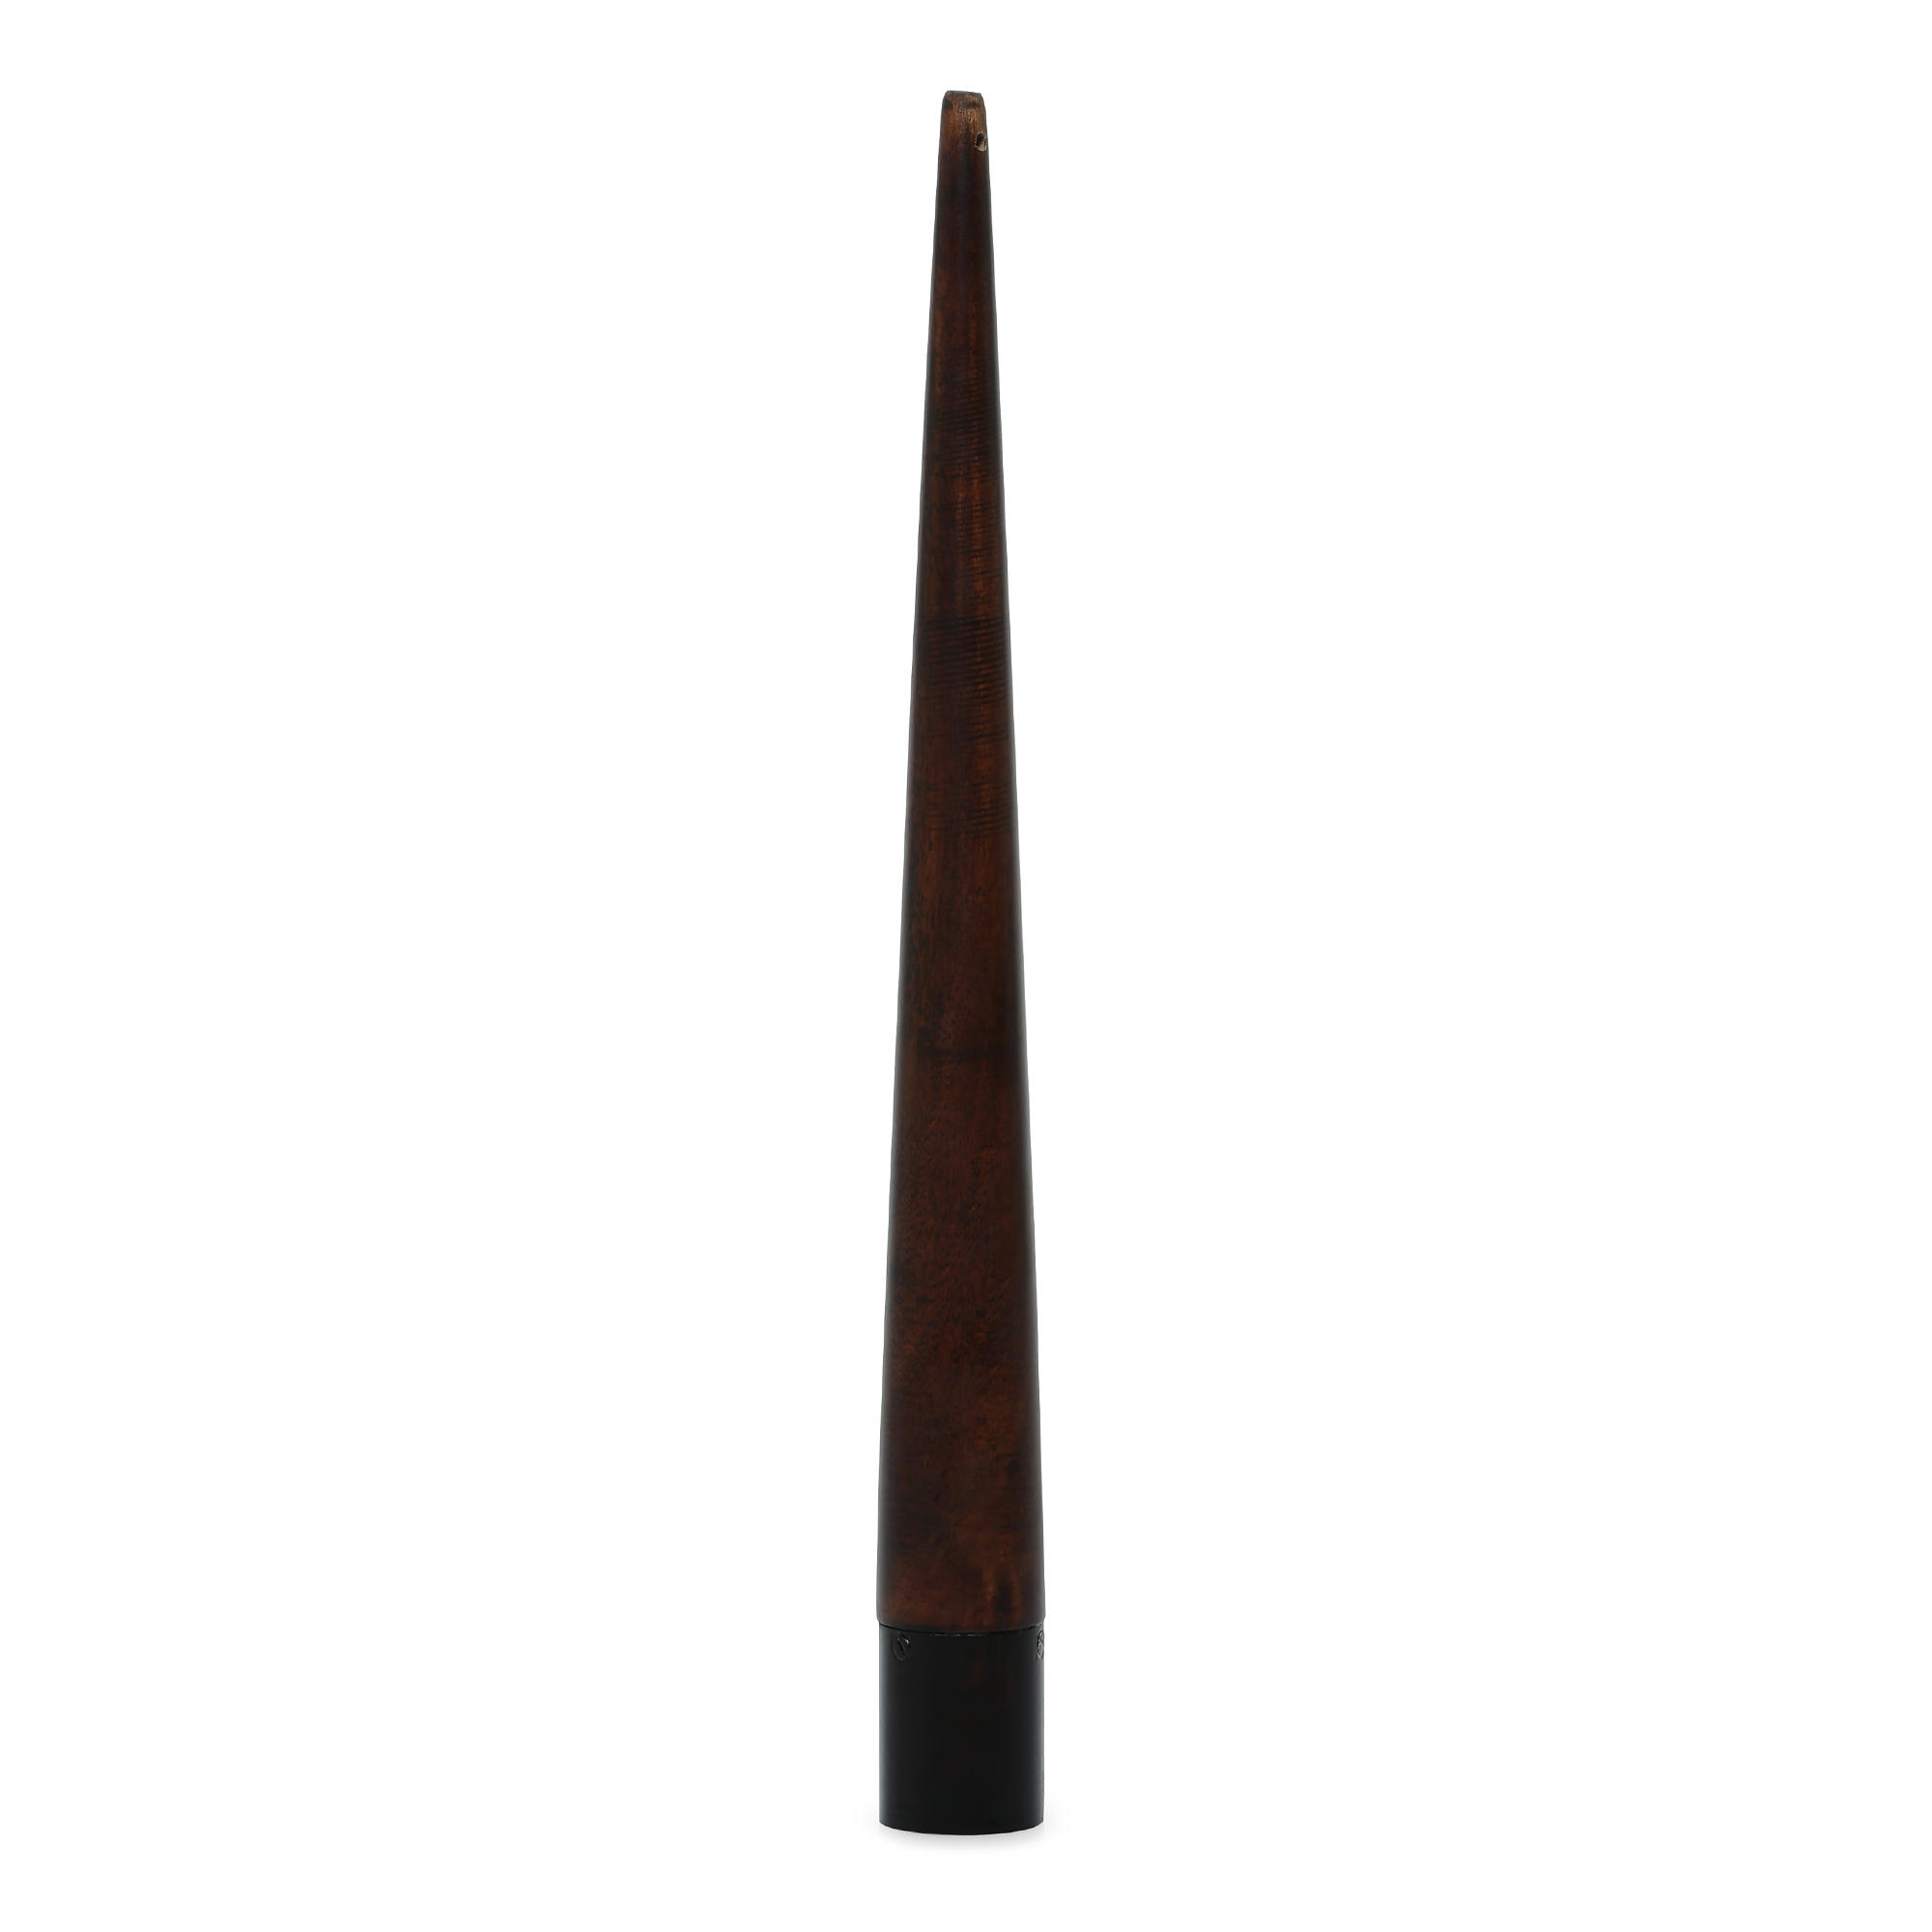 Image of Cricket bat grip cone